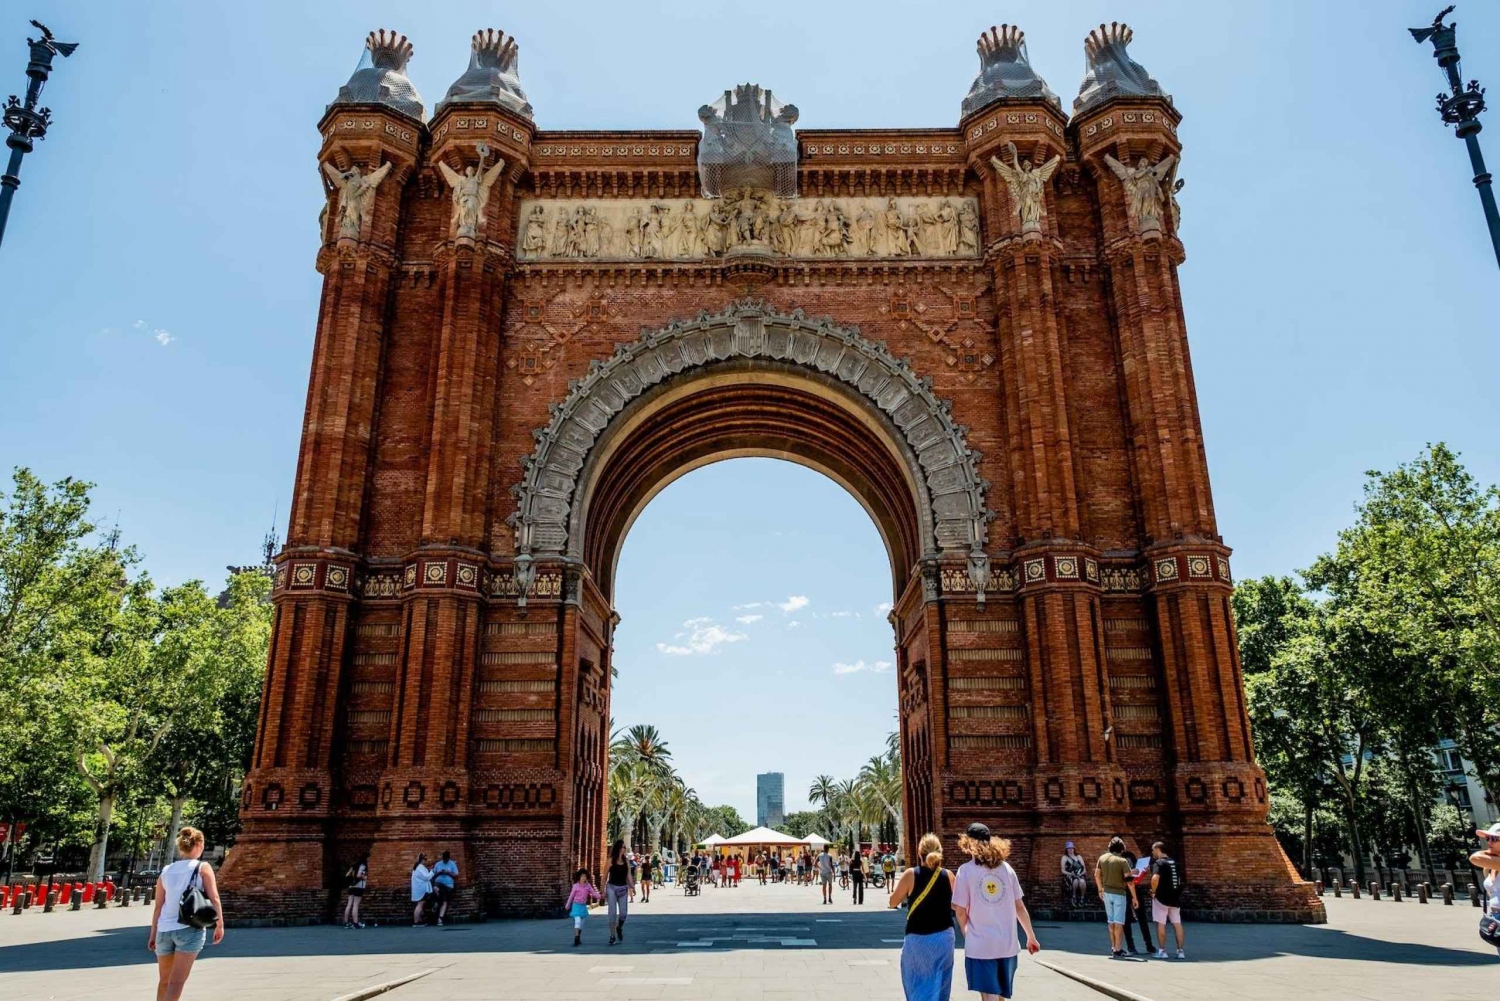 Barcelona - Arc de Triomf : De digitale audiogids